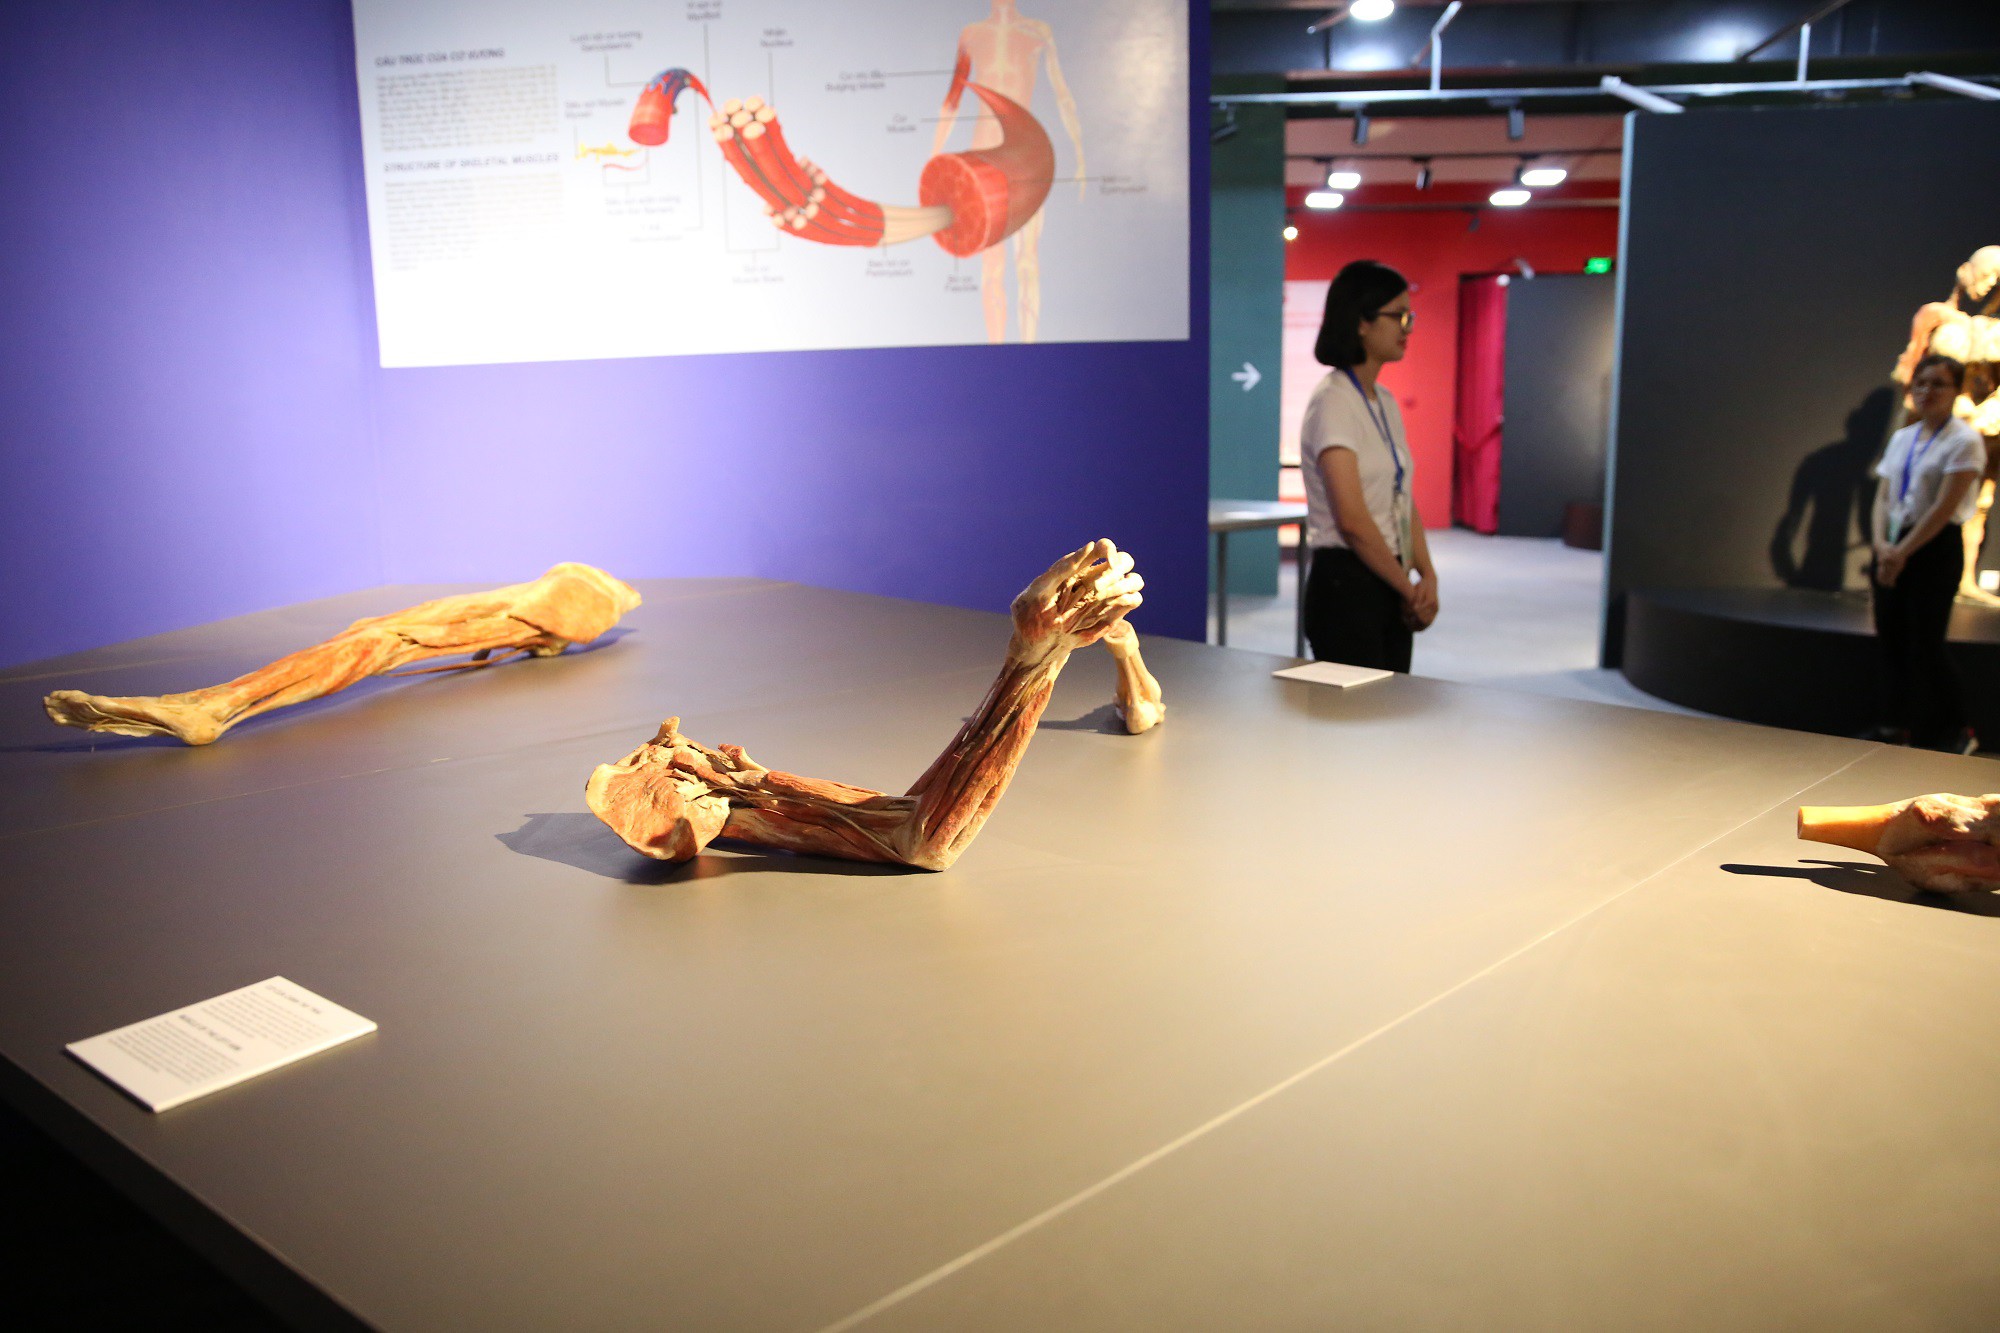 Triển lãm cơ thể và nội tạng của xác người thật được nhựa hóa ở Sài Gòn gây tranh cãi - Ảnh 2.